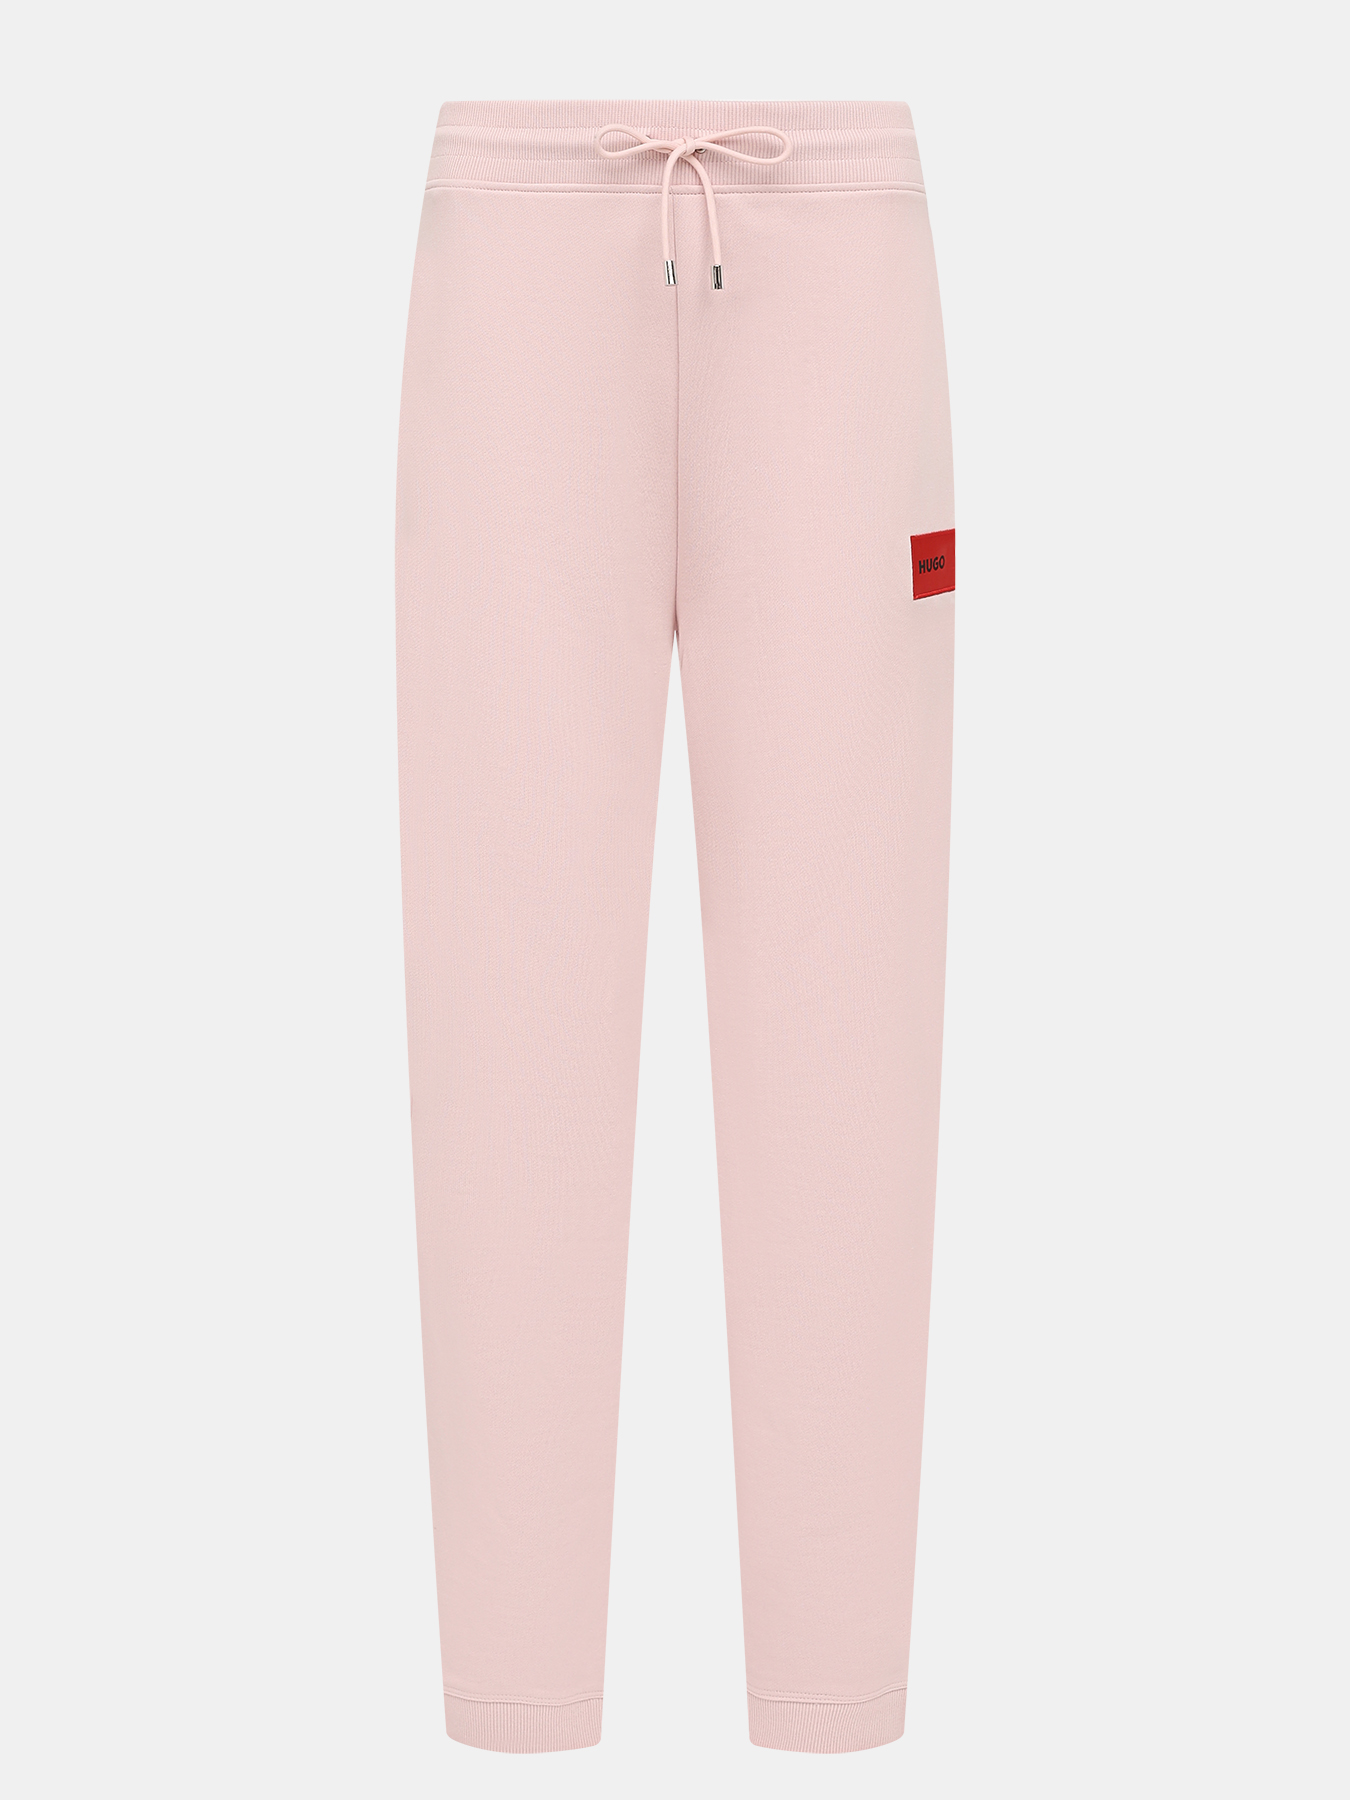 Спортивные брюки Dachibi redlabel HUGO 420594-041, цвет розовый, размер 40-42 - фото 1